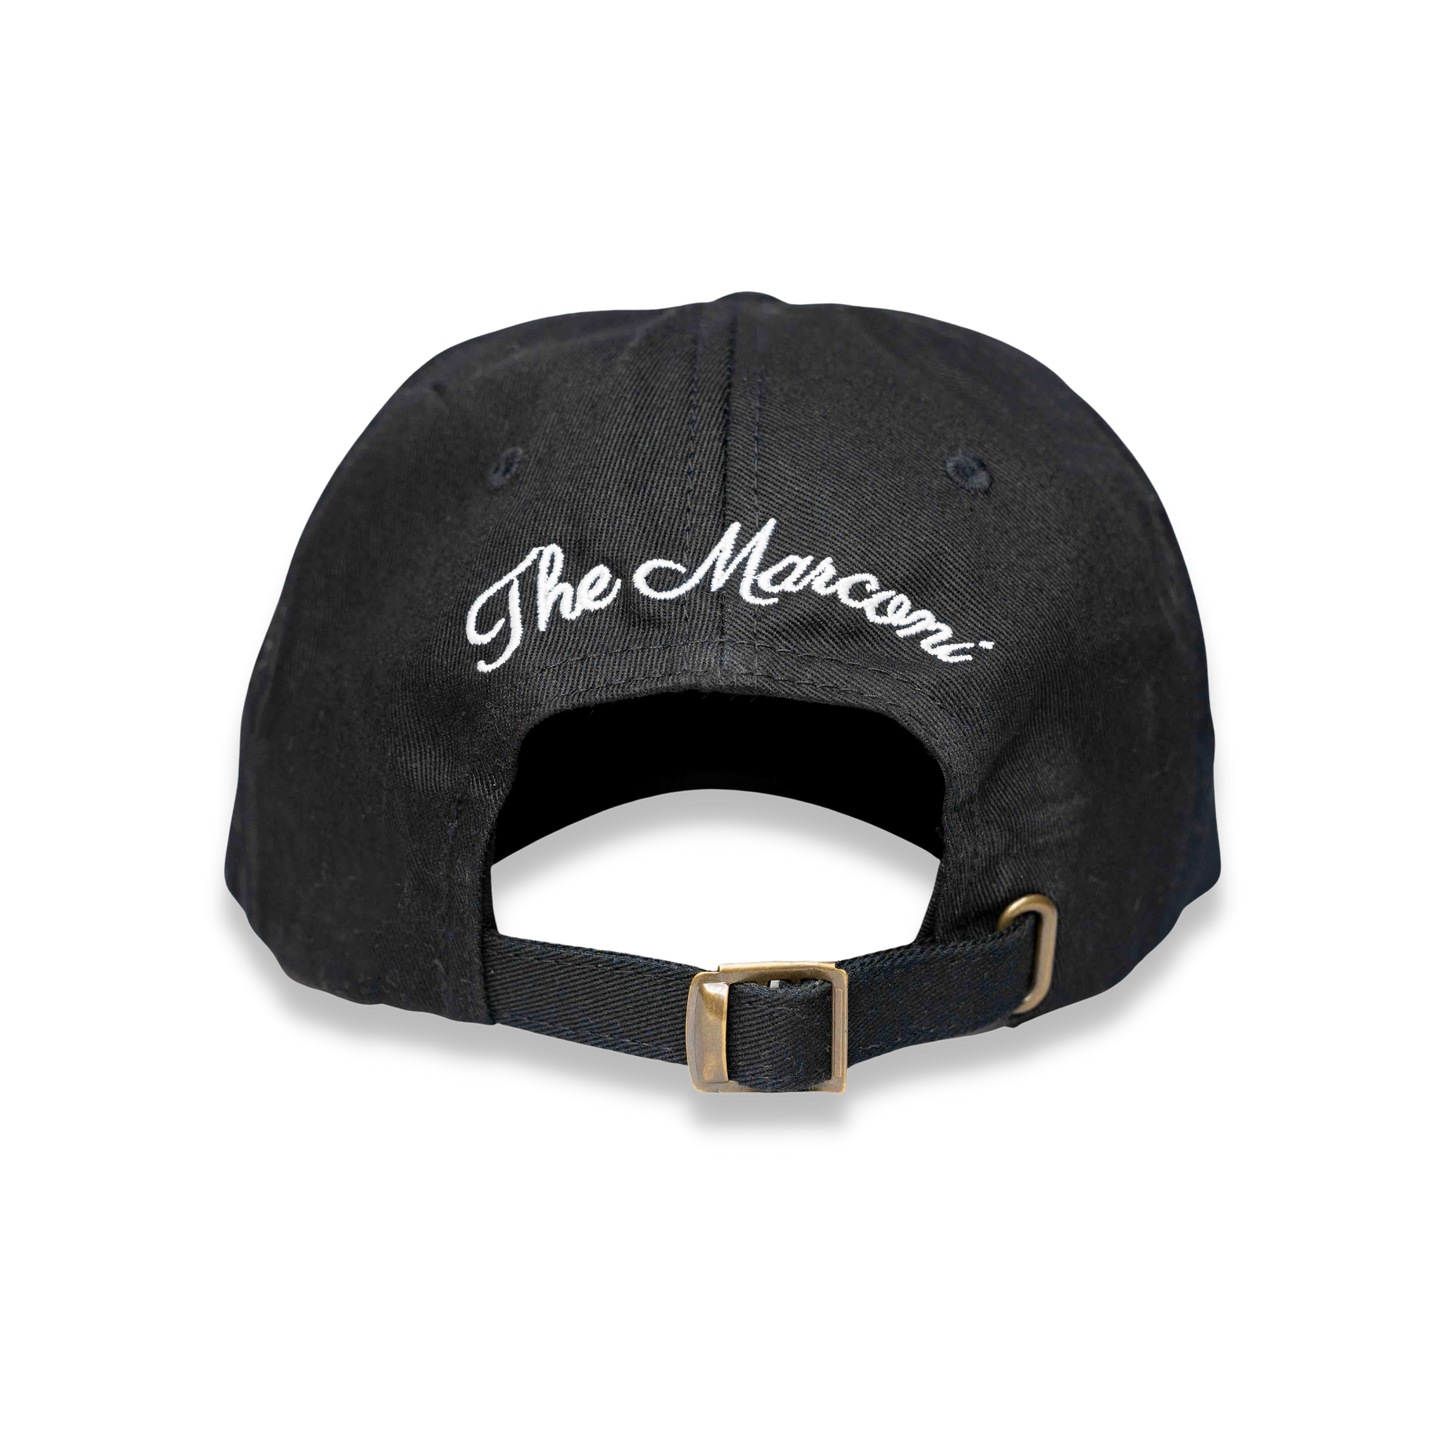 NEW - Iconic "Marconi Horse" Logo Hat - Black